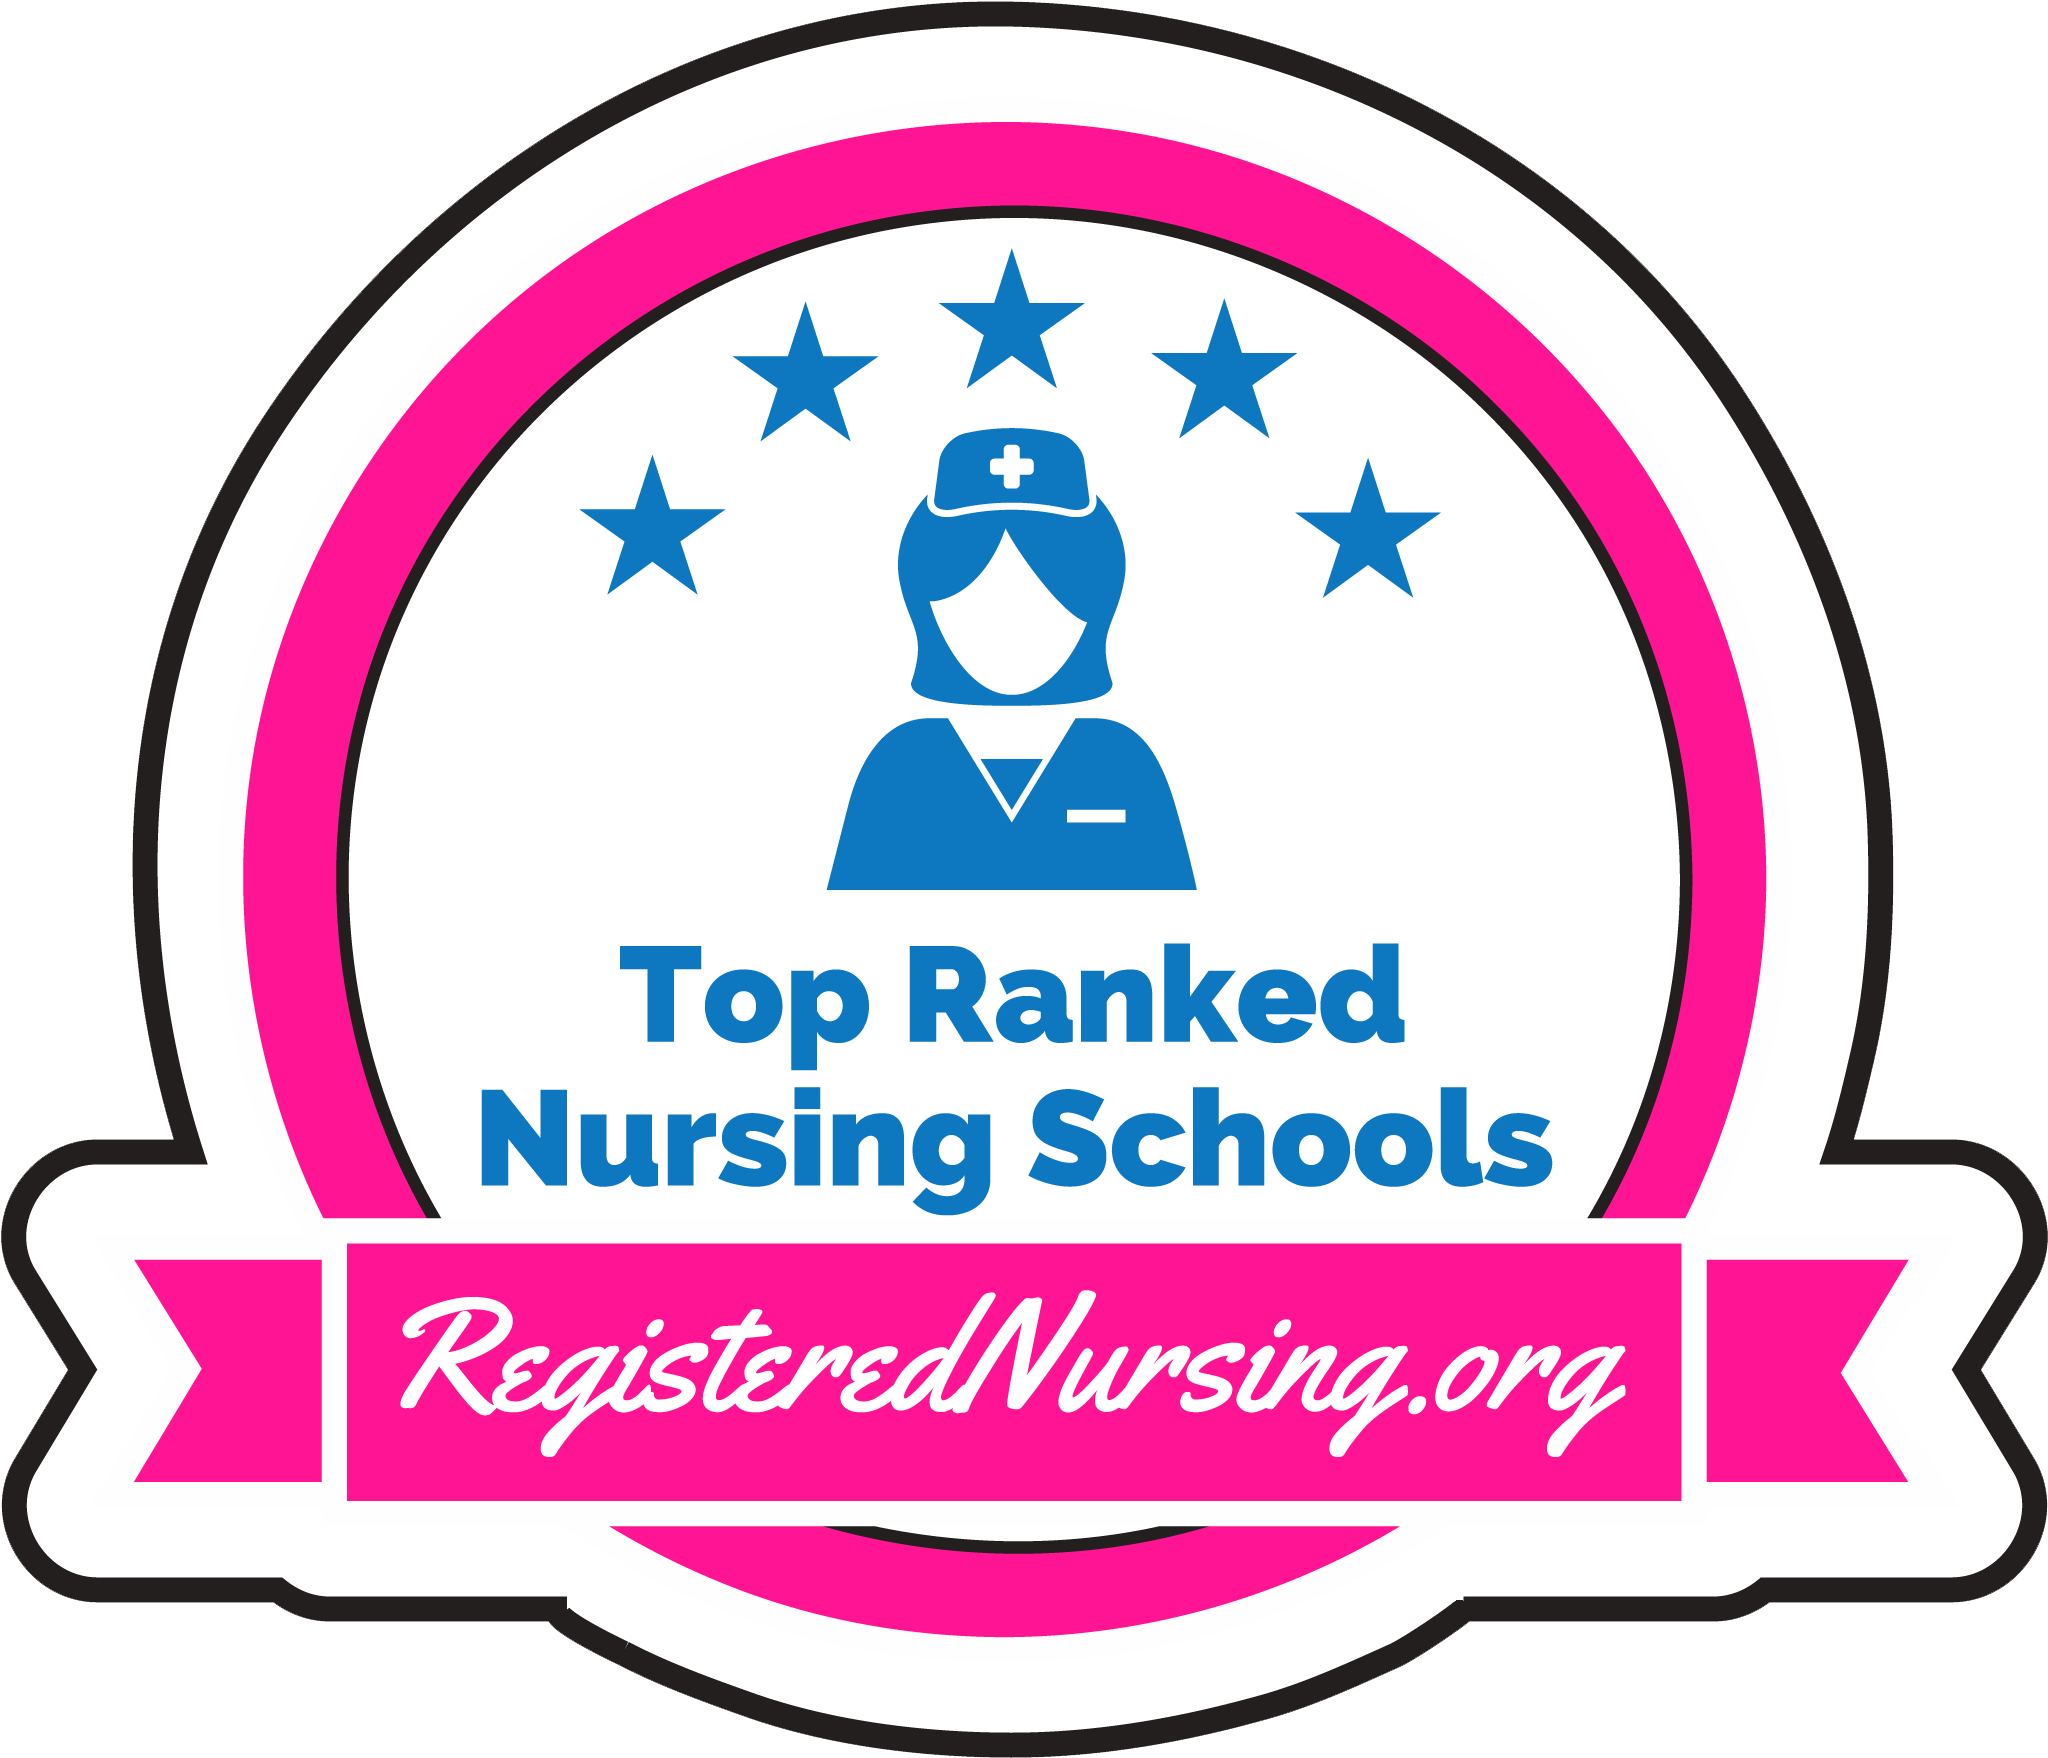 Registered Nurse - Nursing School (2500x1764)